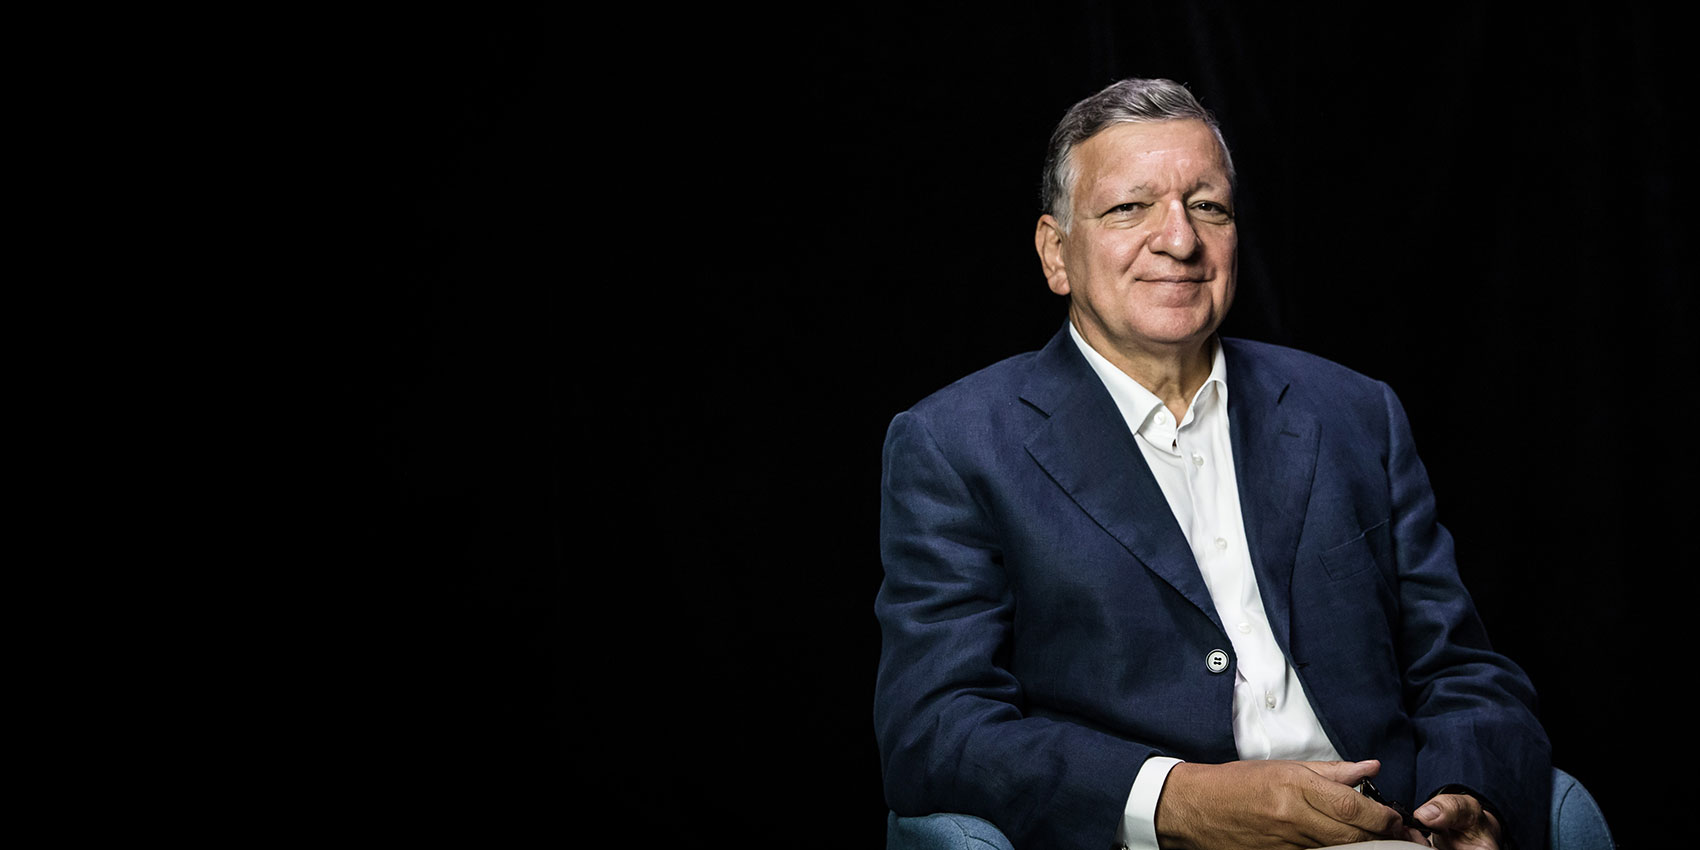 José Manuel Barroso  Gavi, the Vaccine Alliance